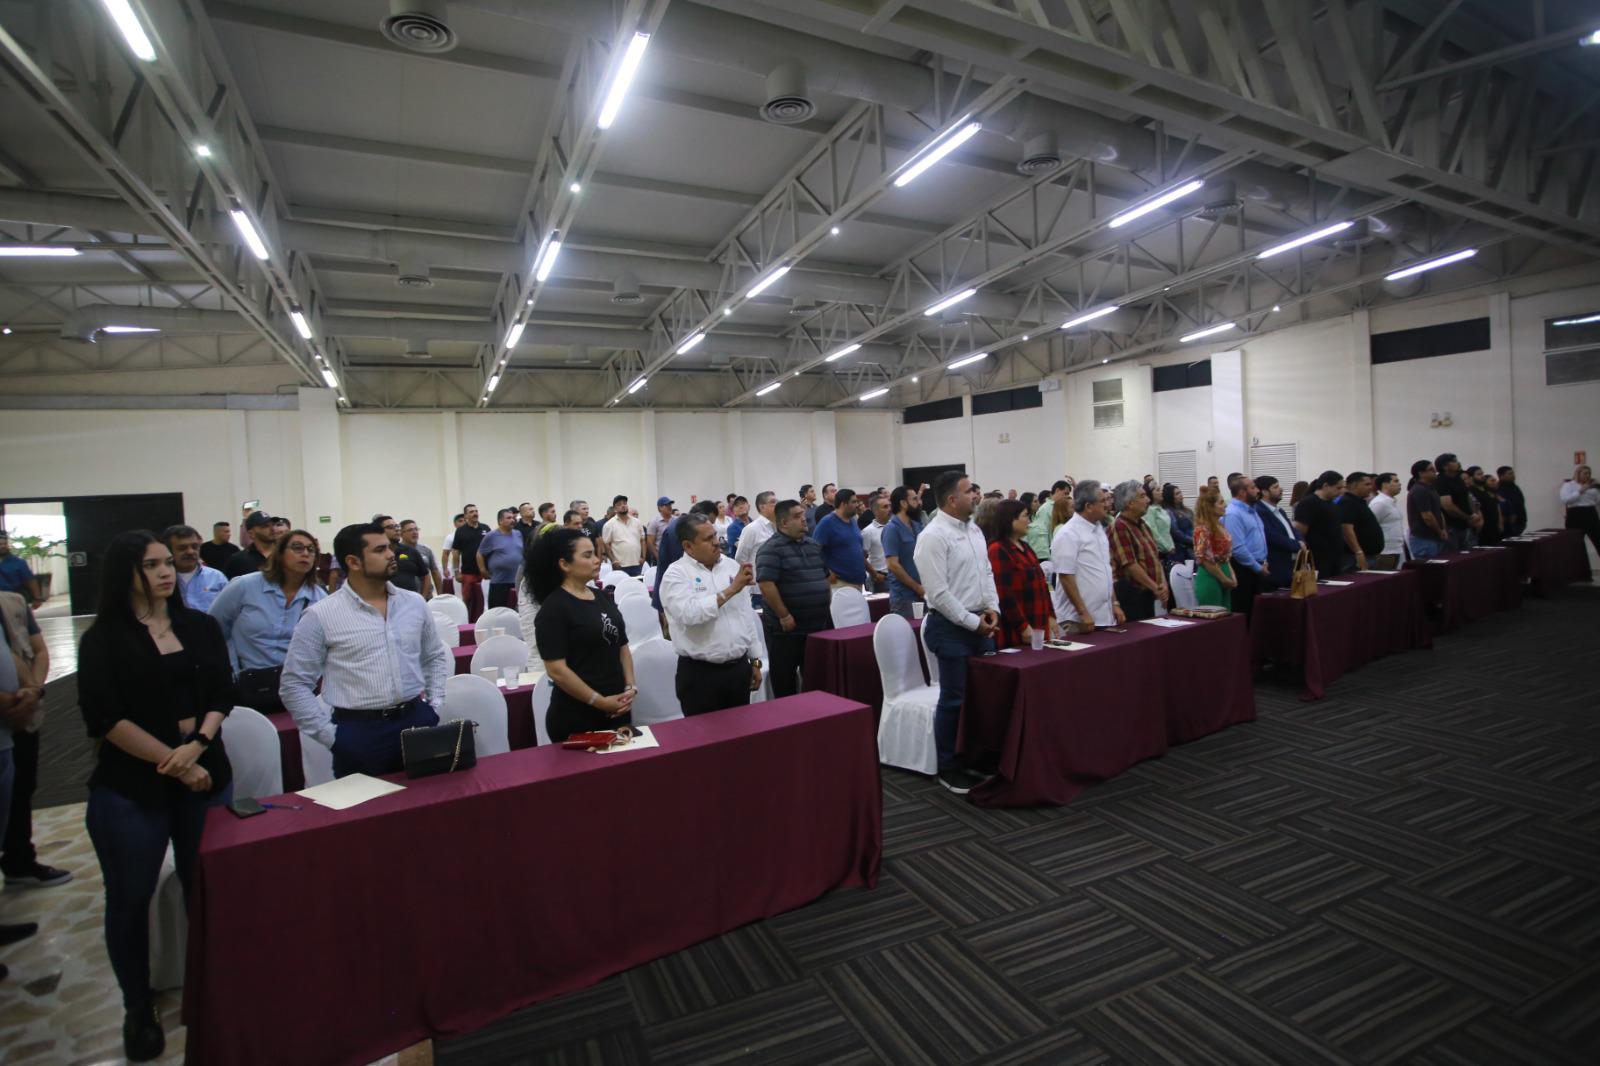 $!Inauguran el Congreso Estatal de Establecimientos de Atención a las Adicciones en Sinaloa